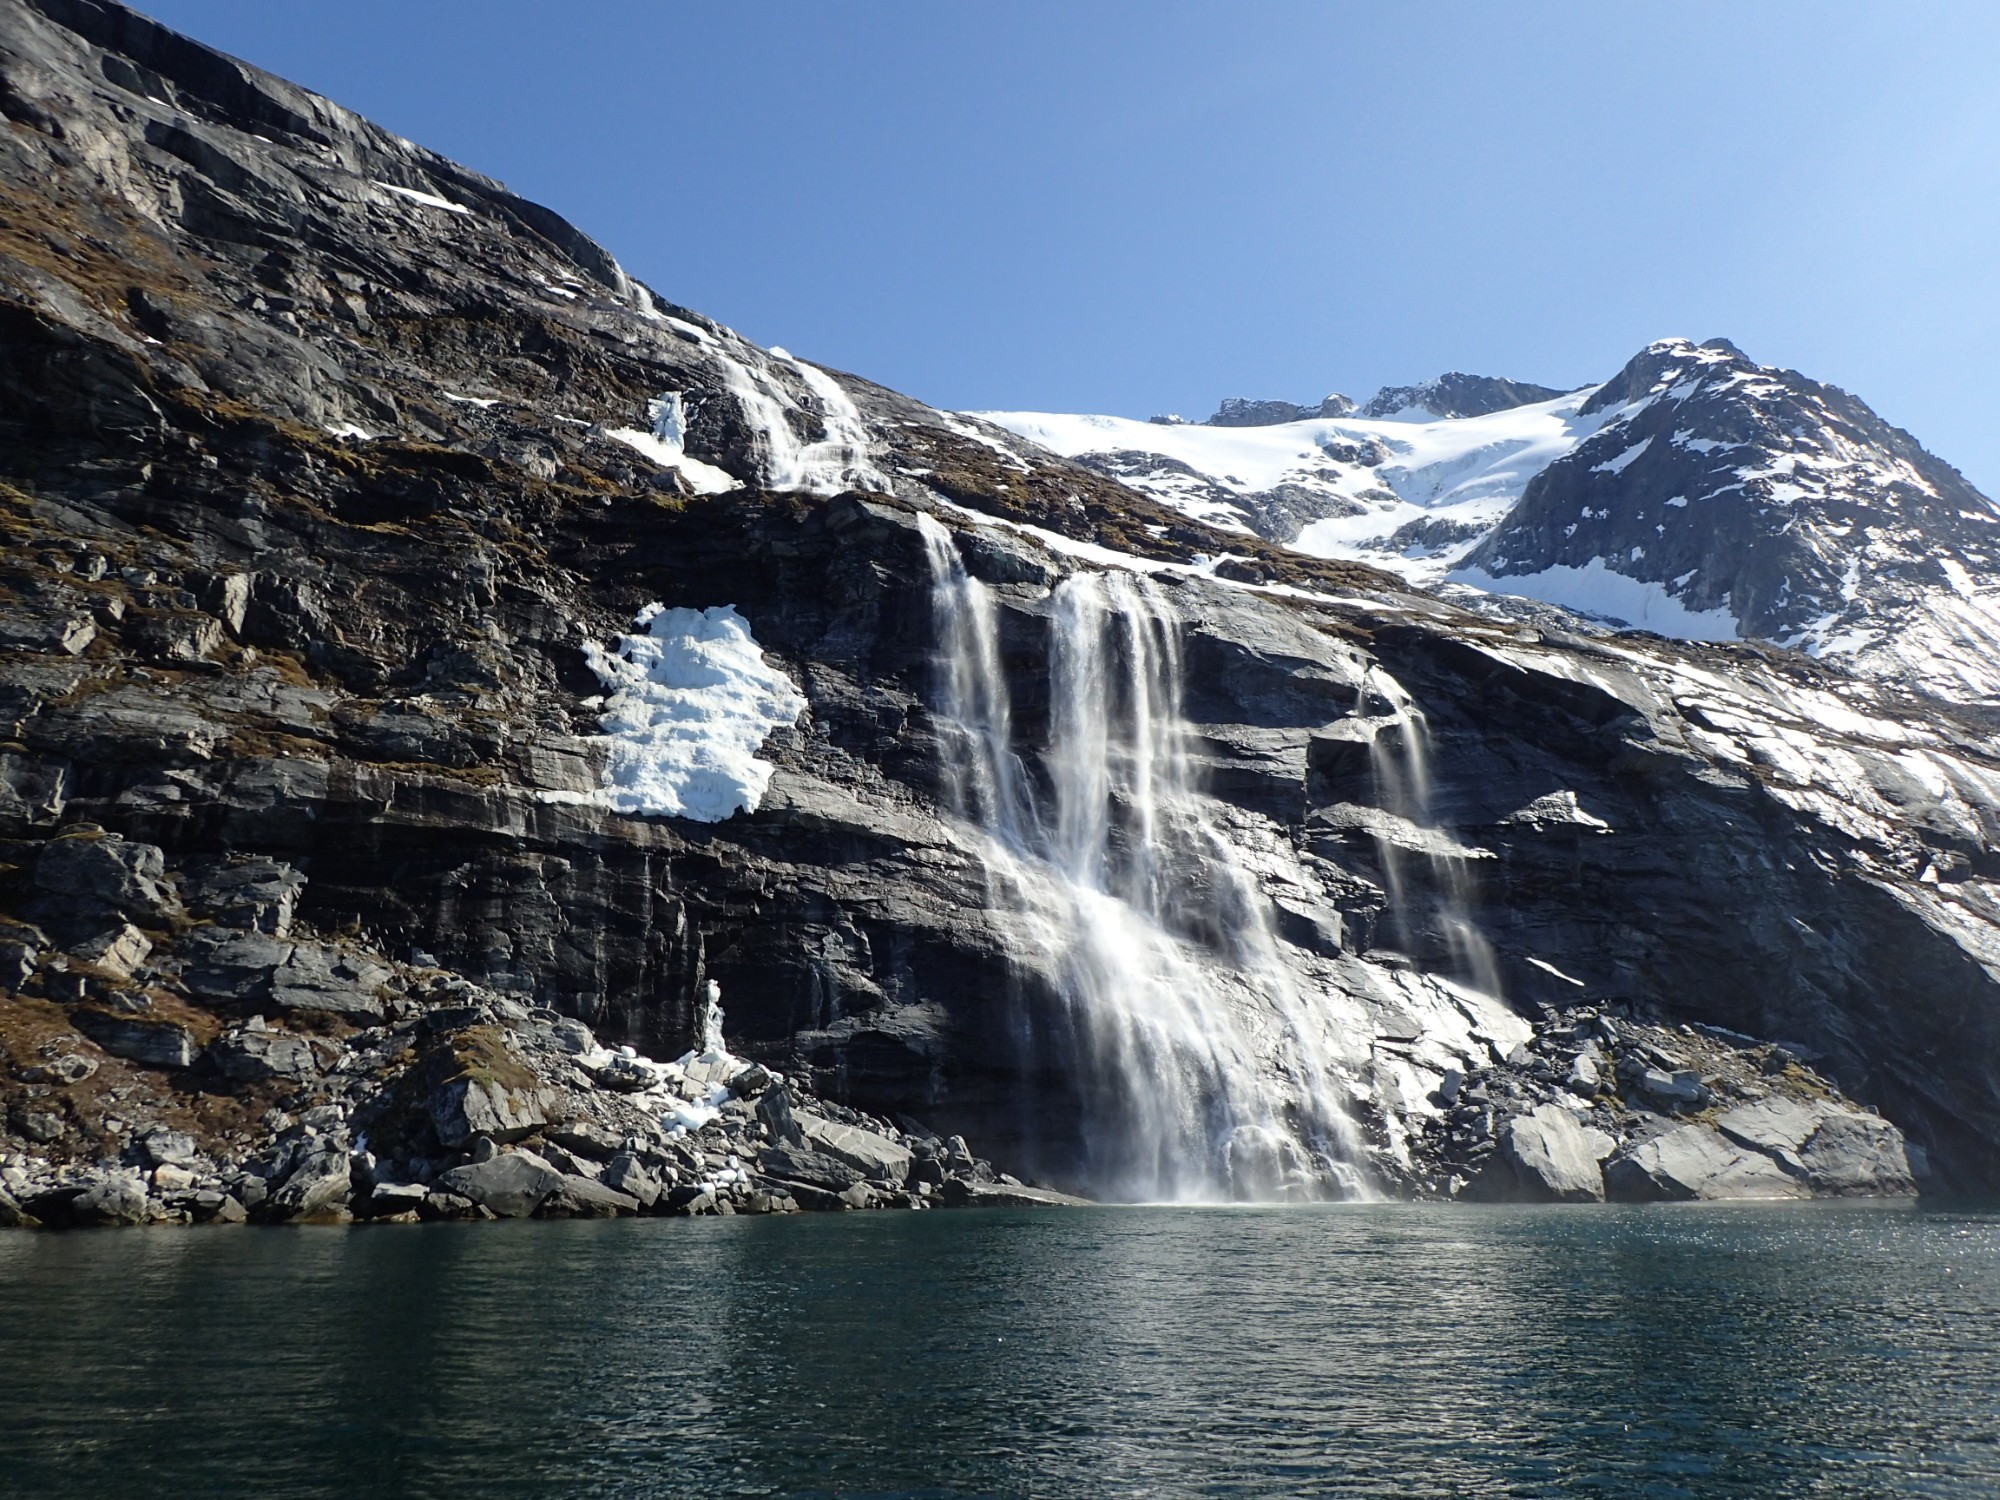 Waterfalls at Sadelo, Гренландия